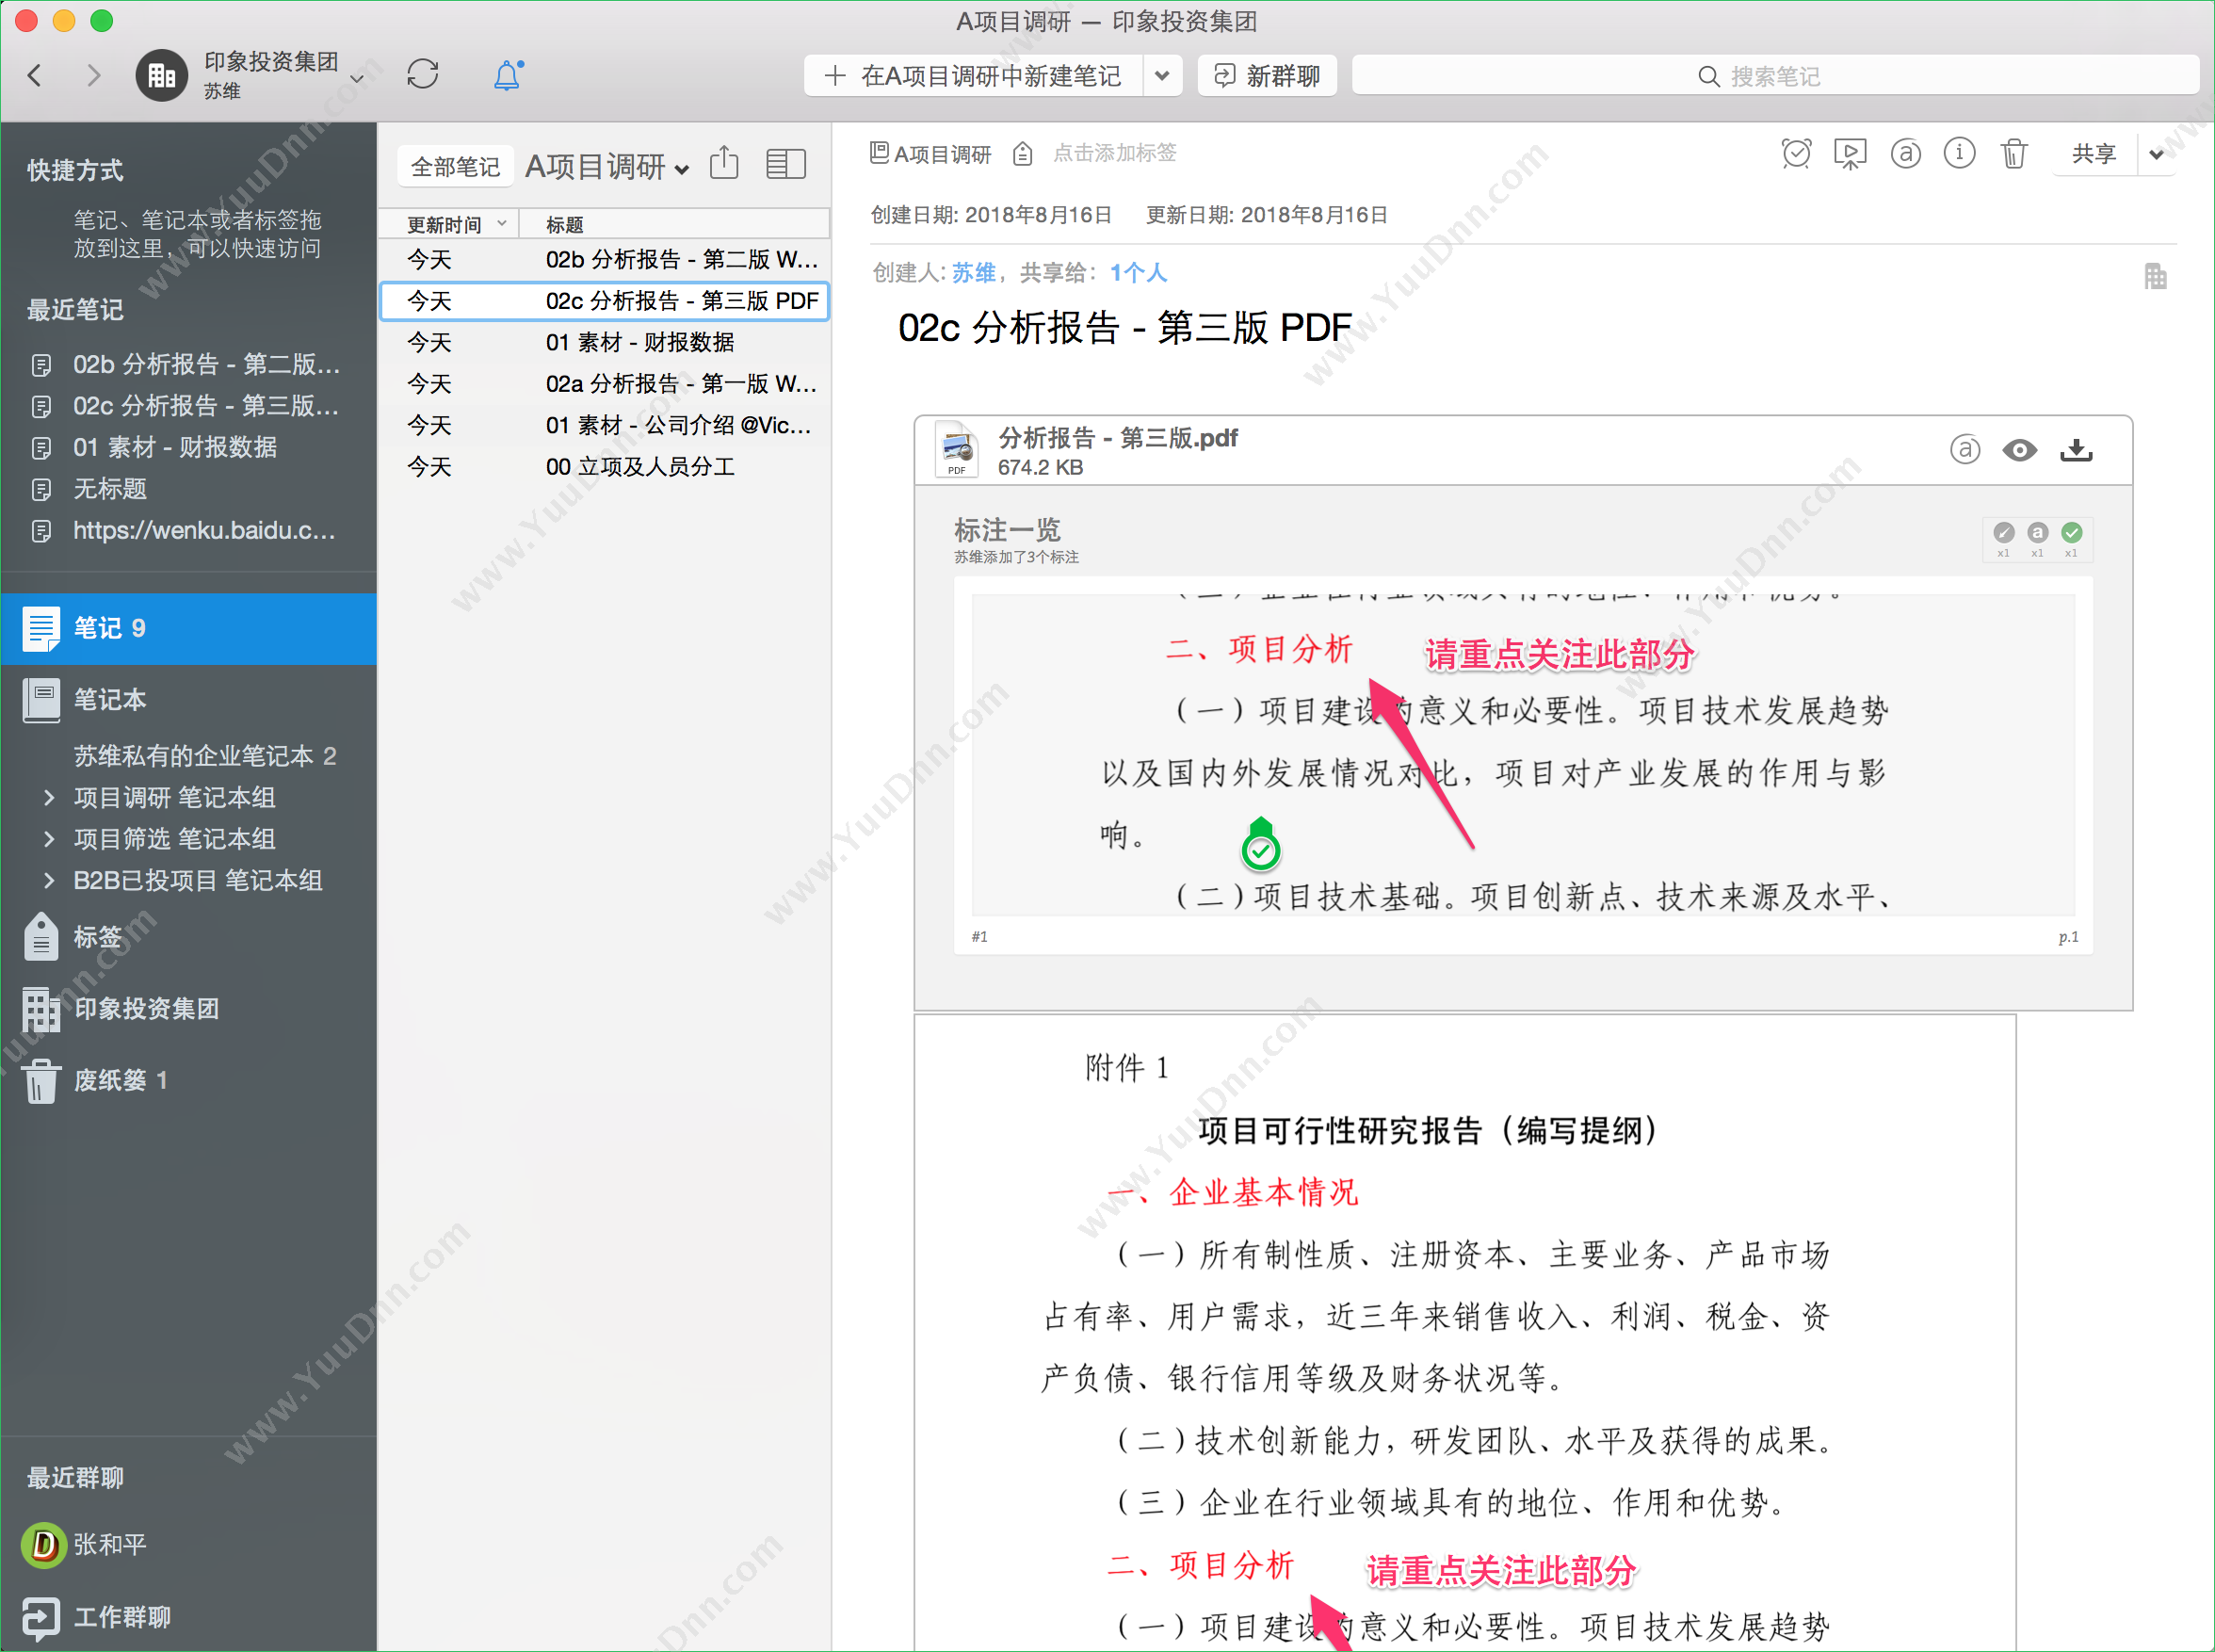 北京印象笔记科技有限公司 印象笔记企业版 文档管理